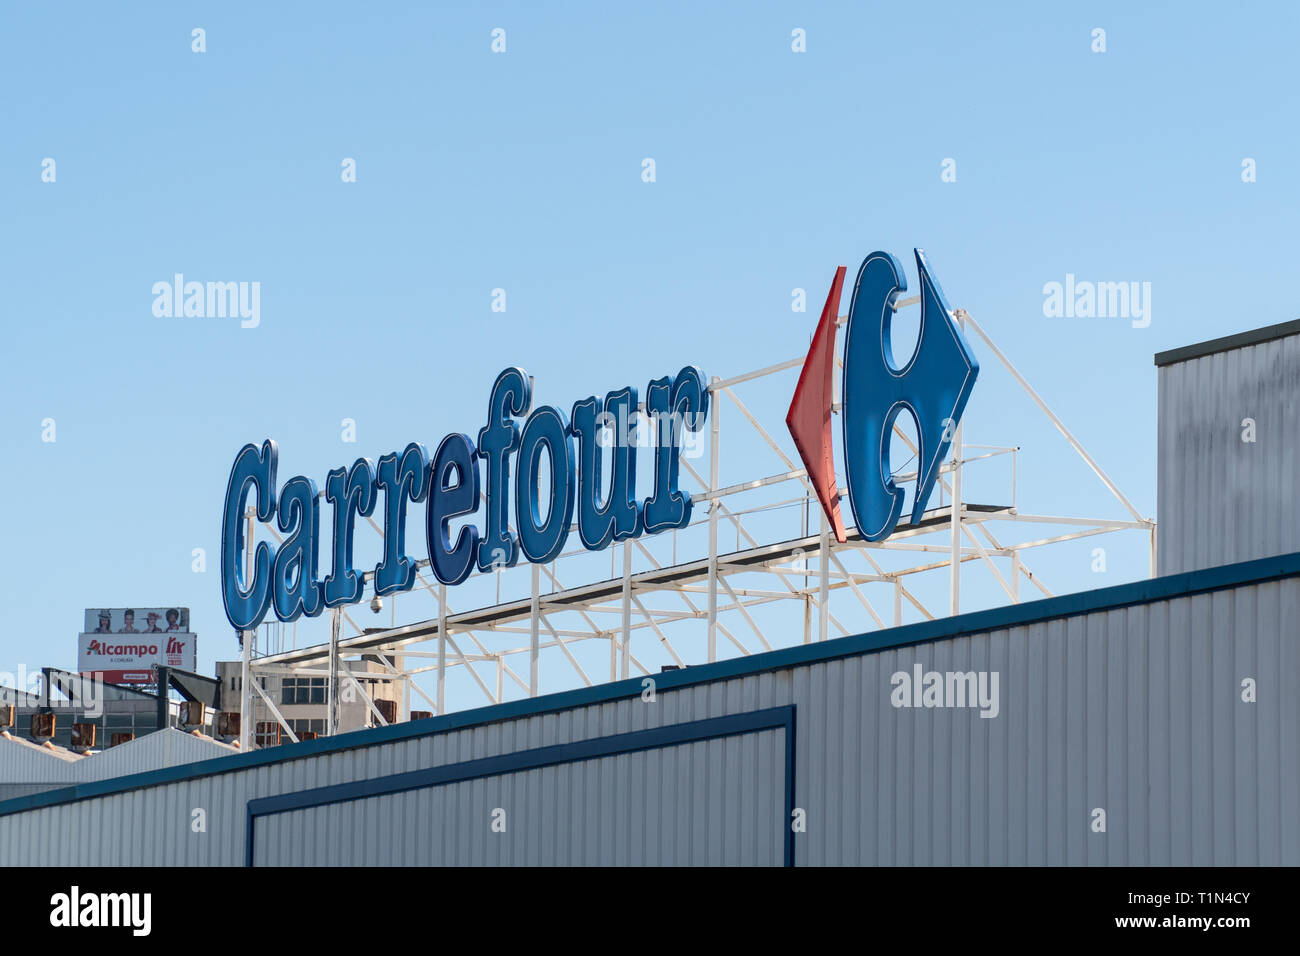 Carrefour Logo Stock Photos Carrefour Logo Stock Images